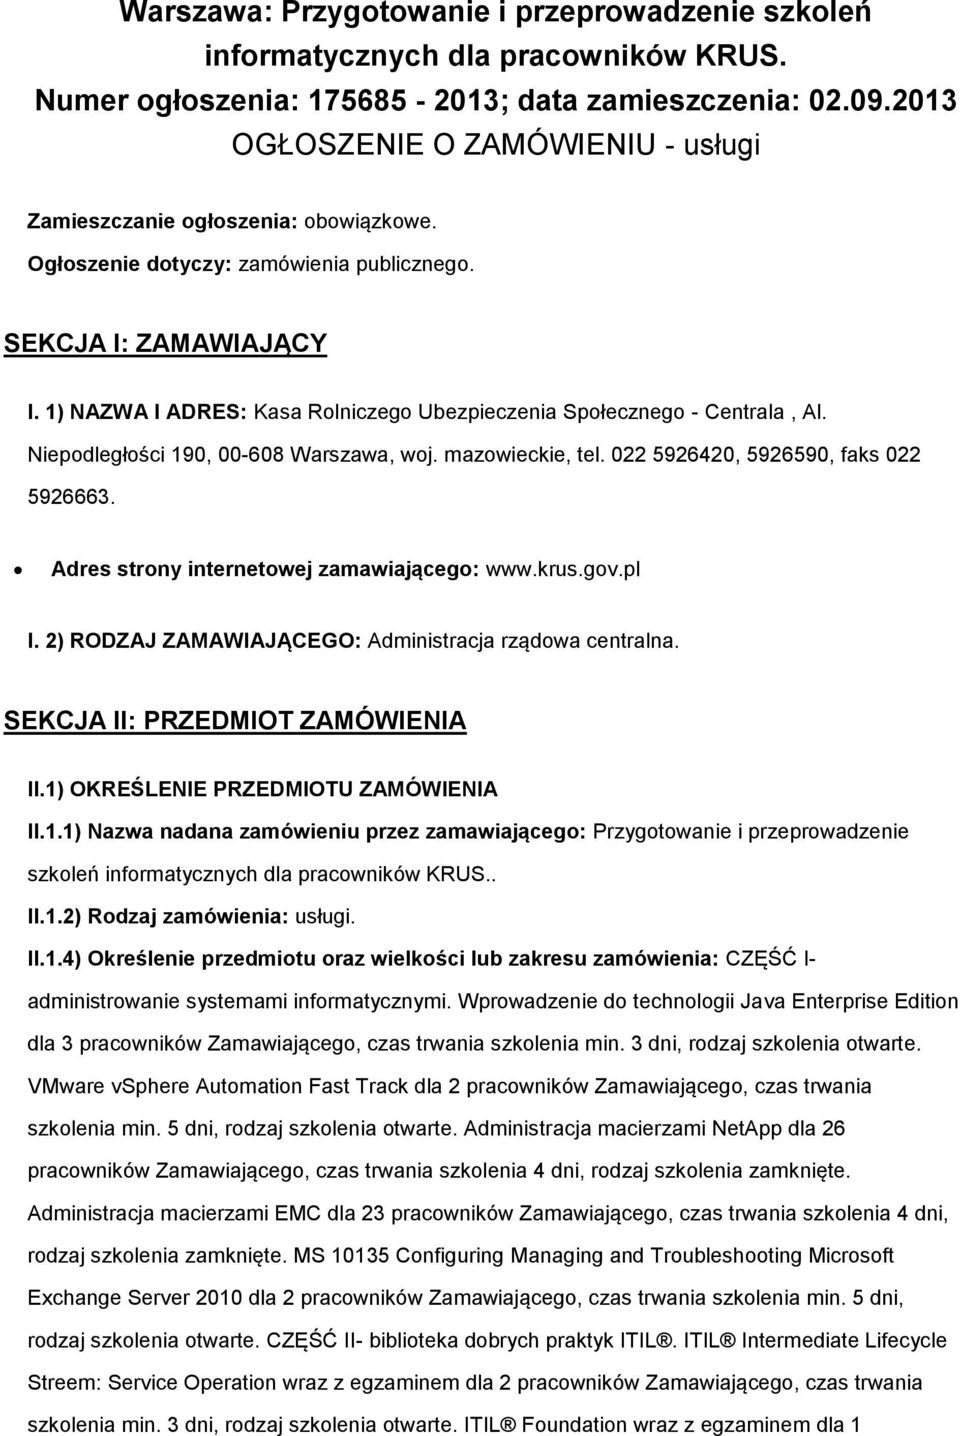 1) NAZWA I ADRES: Kasa Rlniczeg Ubezpieczenia Spłeczneg - Centrala, Al. Niepdległści 190, 00-608 Warszawa, wj. mazwieckie, tel. 022 5926420, 5926590, faks 022 5926663.